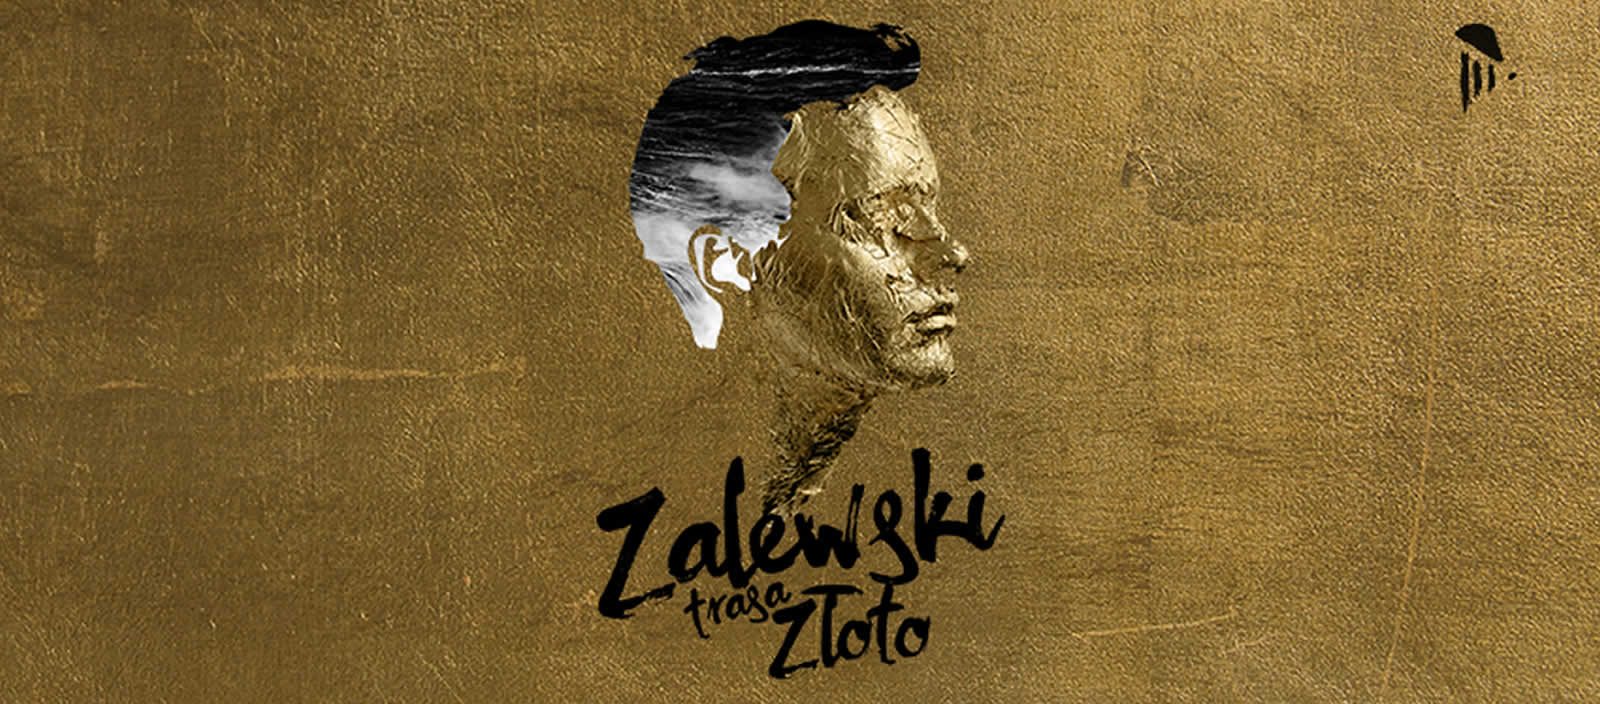 Koncert Krzysztofa Zalewskiego